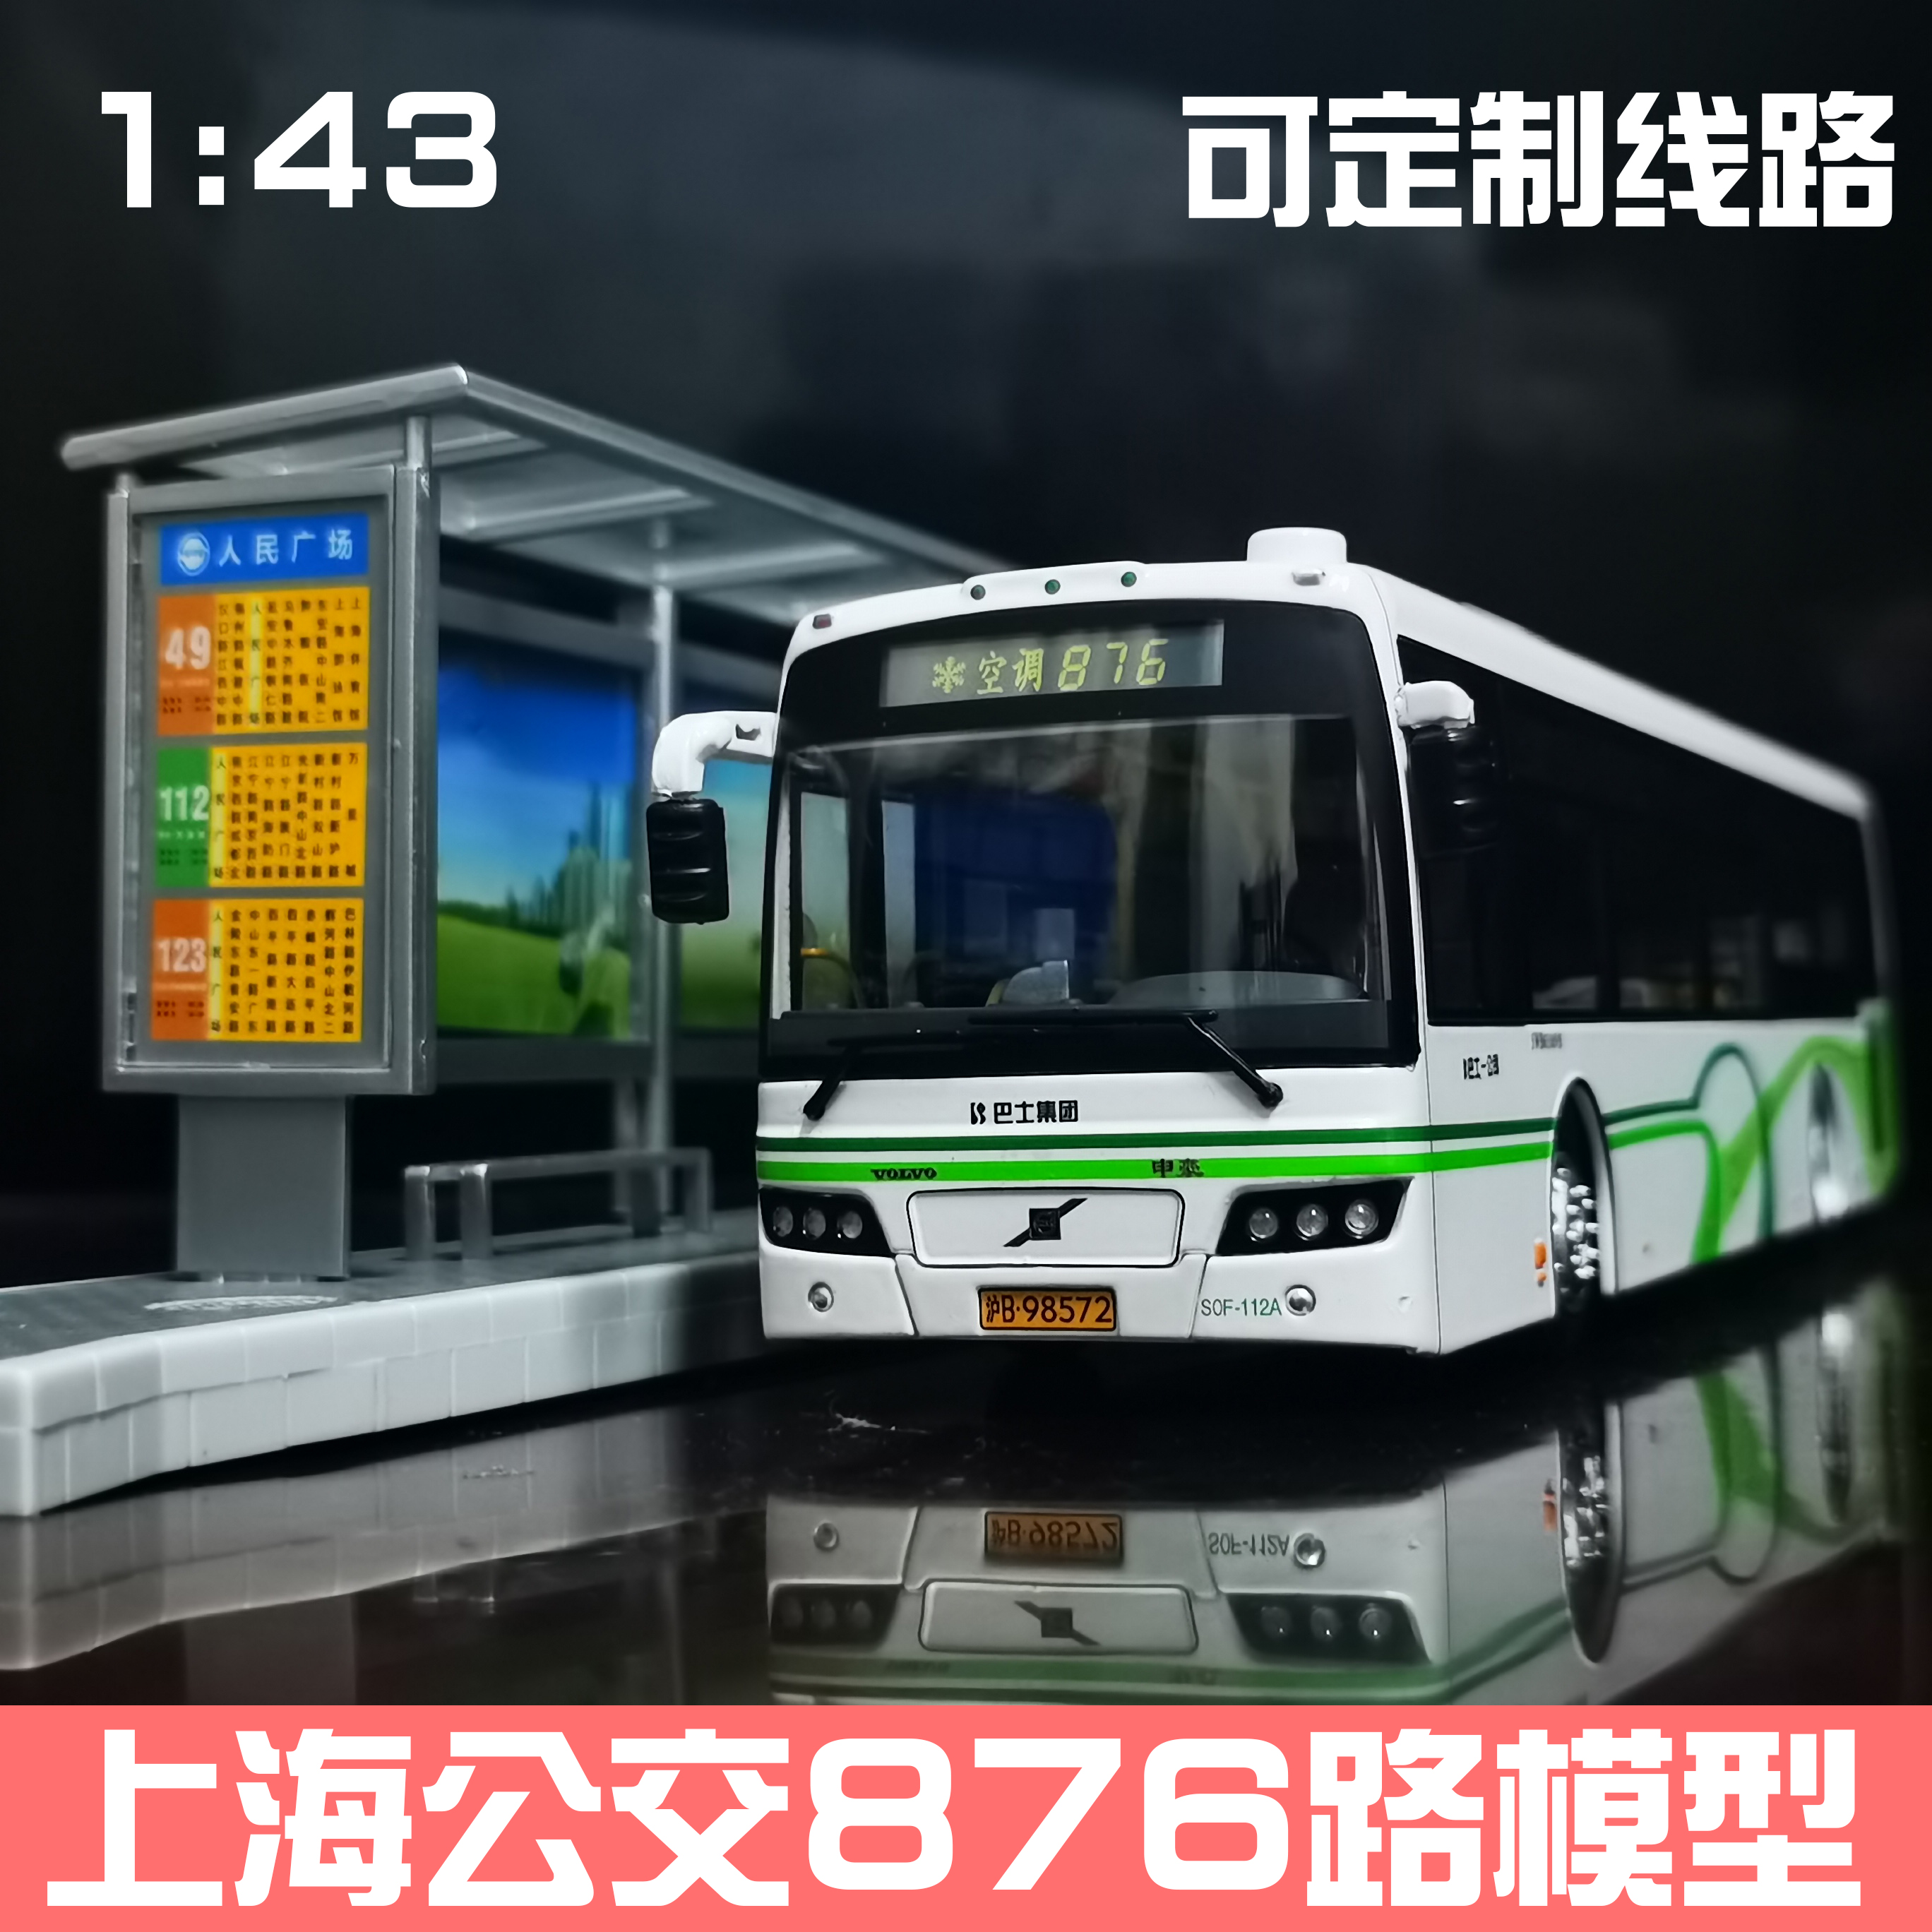 1 43 上海公交玩具车 申沃客车模型 新款合金巴士万象大宇车模